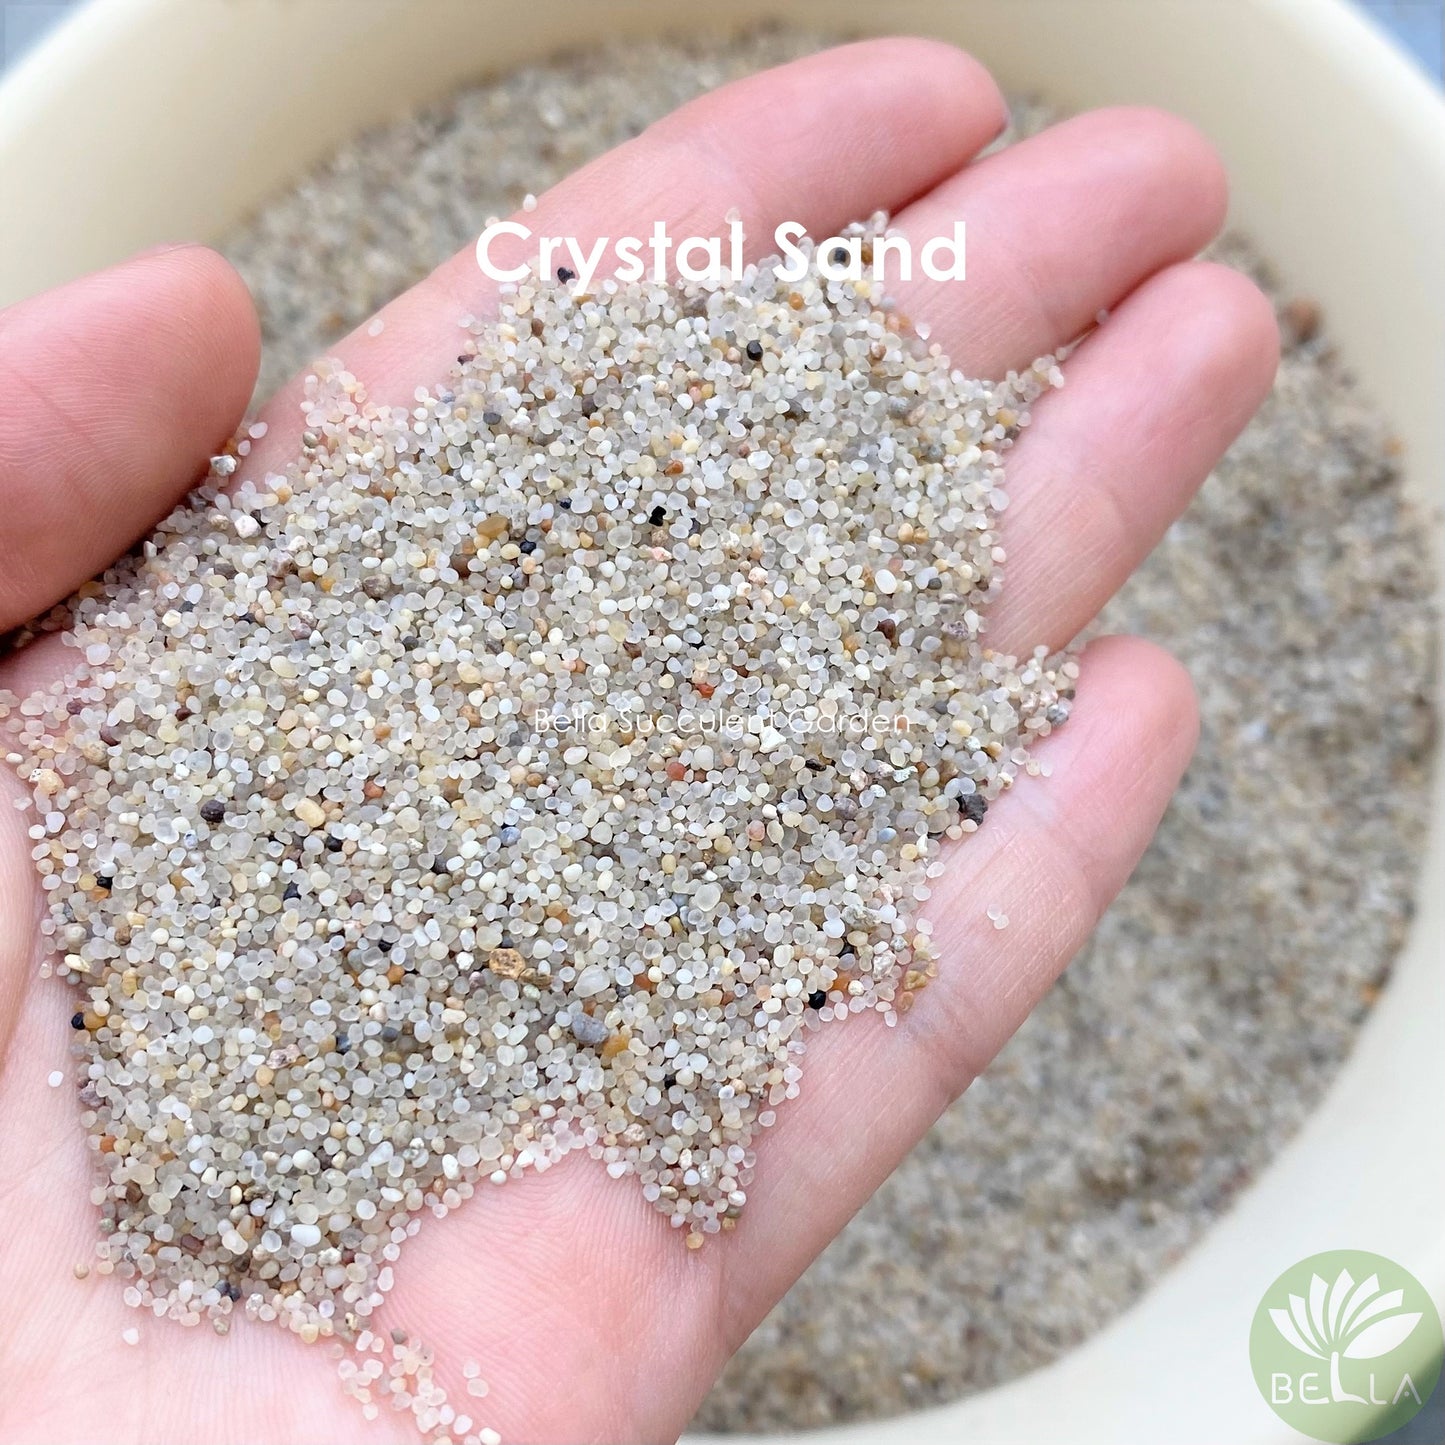 水晶砂 (Crystal Sand)